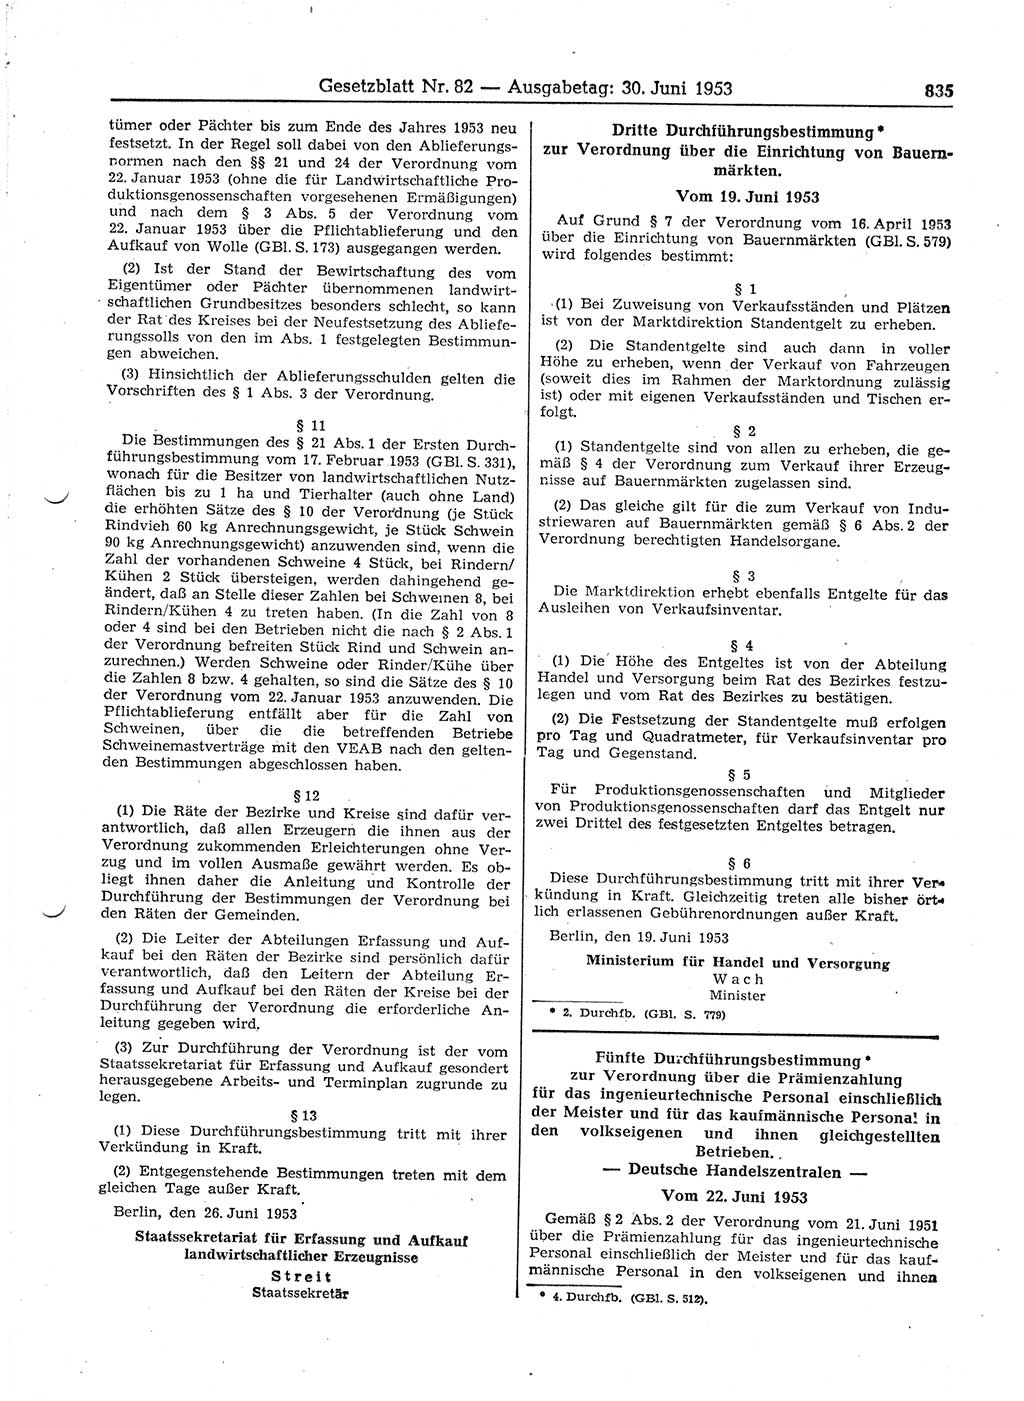 Gesetzblatt (GBl.) der Deutschen Demokratischen Republik (DDR) 1953, Seite 835 (GBl. DDR 1953, S. 835)